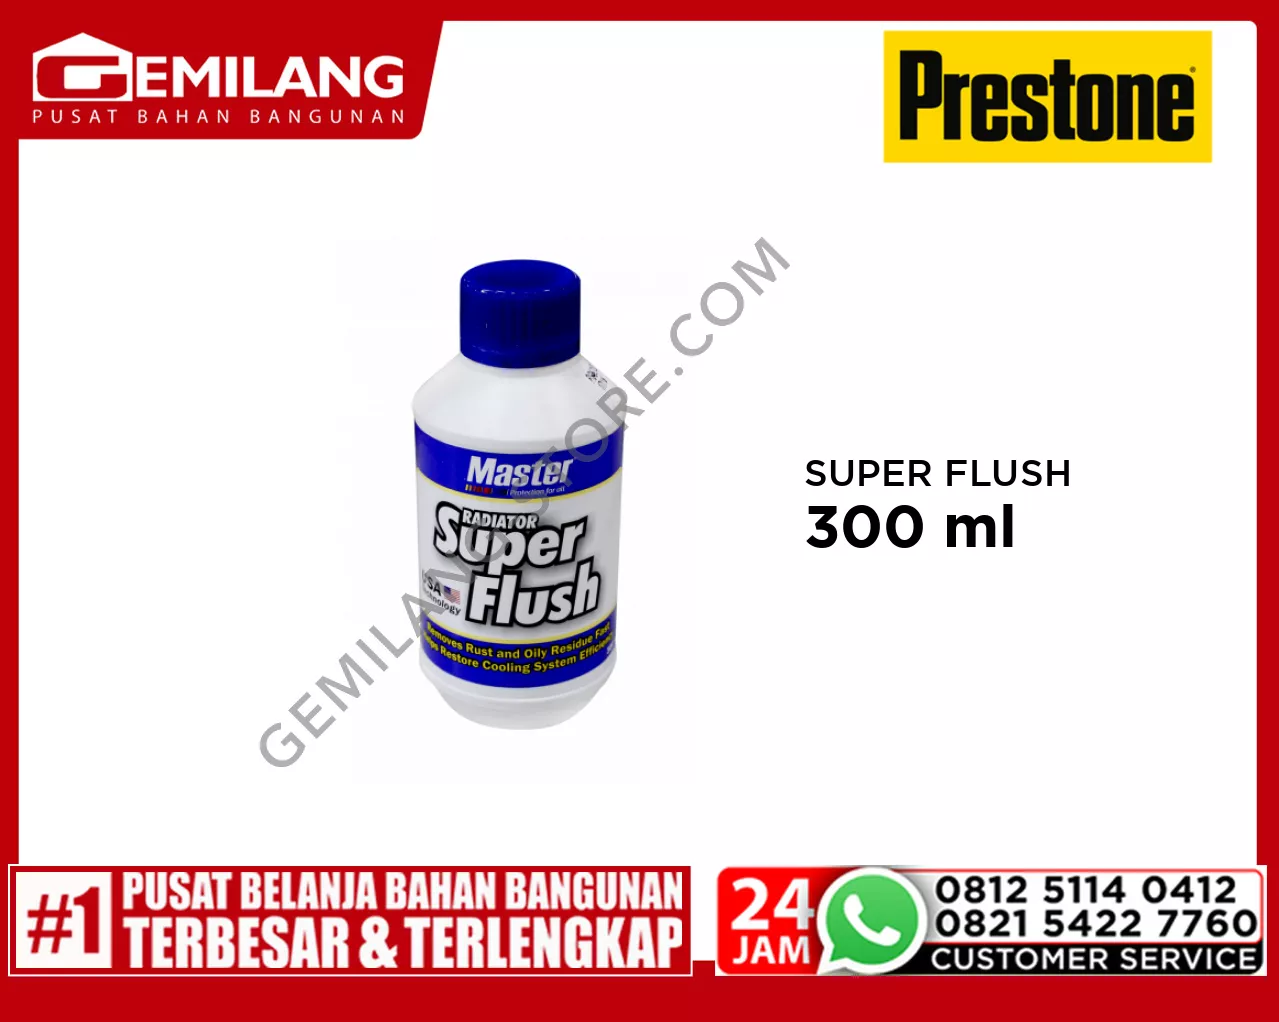 PRESTONE MASTER SUPER FLUSH 300ml